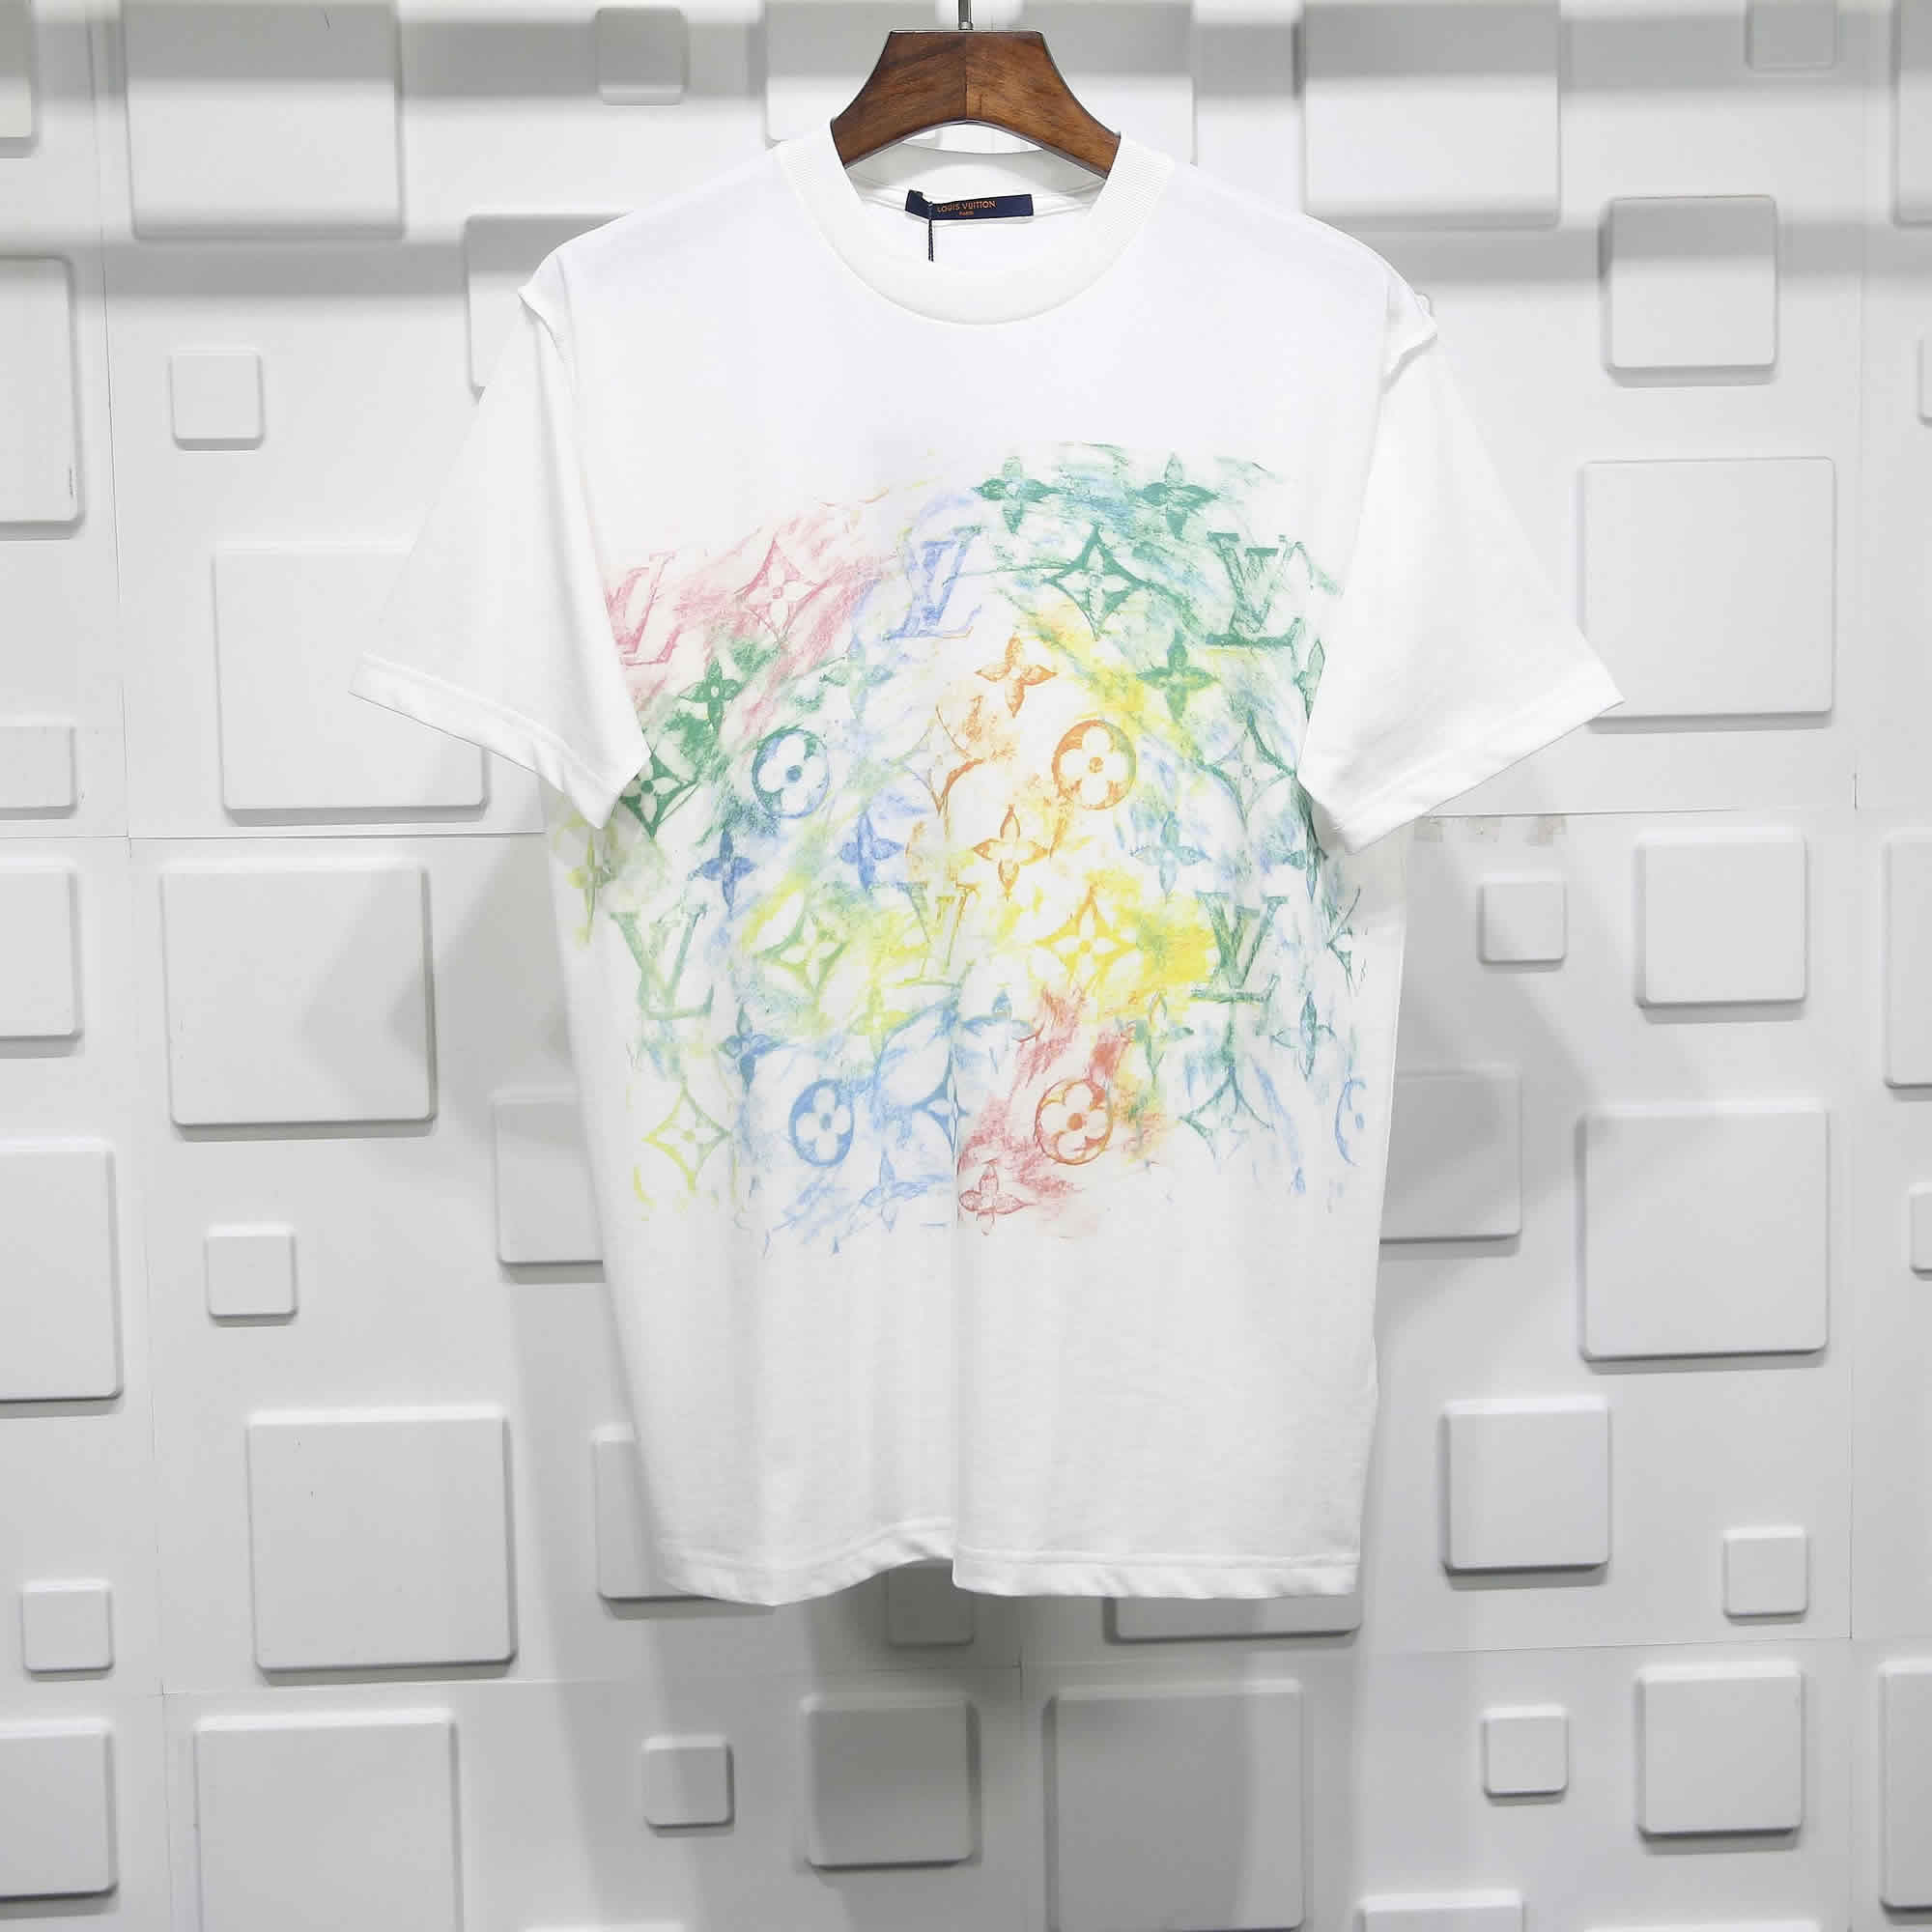 Louis Vuitton Crayon Doodle T Shirt 1 - kickbulk.org